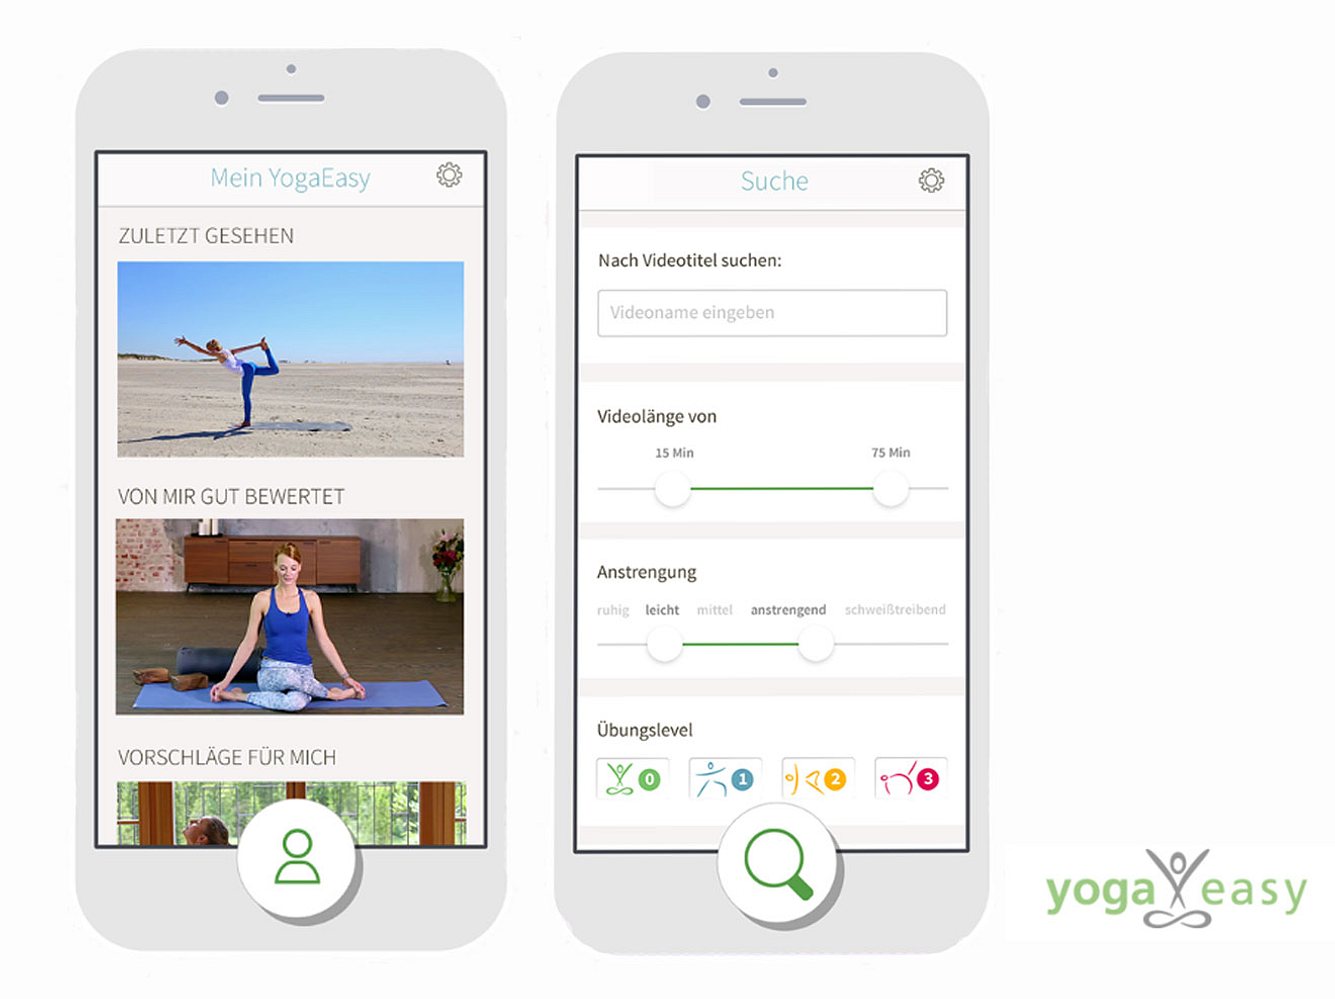 Fitness Apps im Test: So funktioniert Yoga Easy